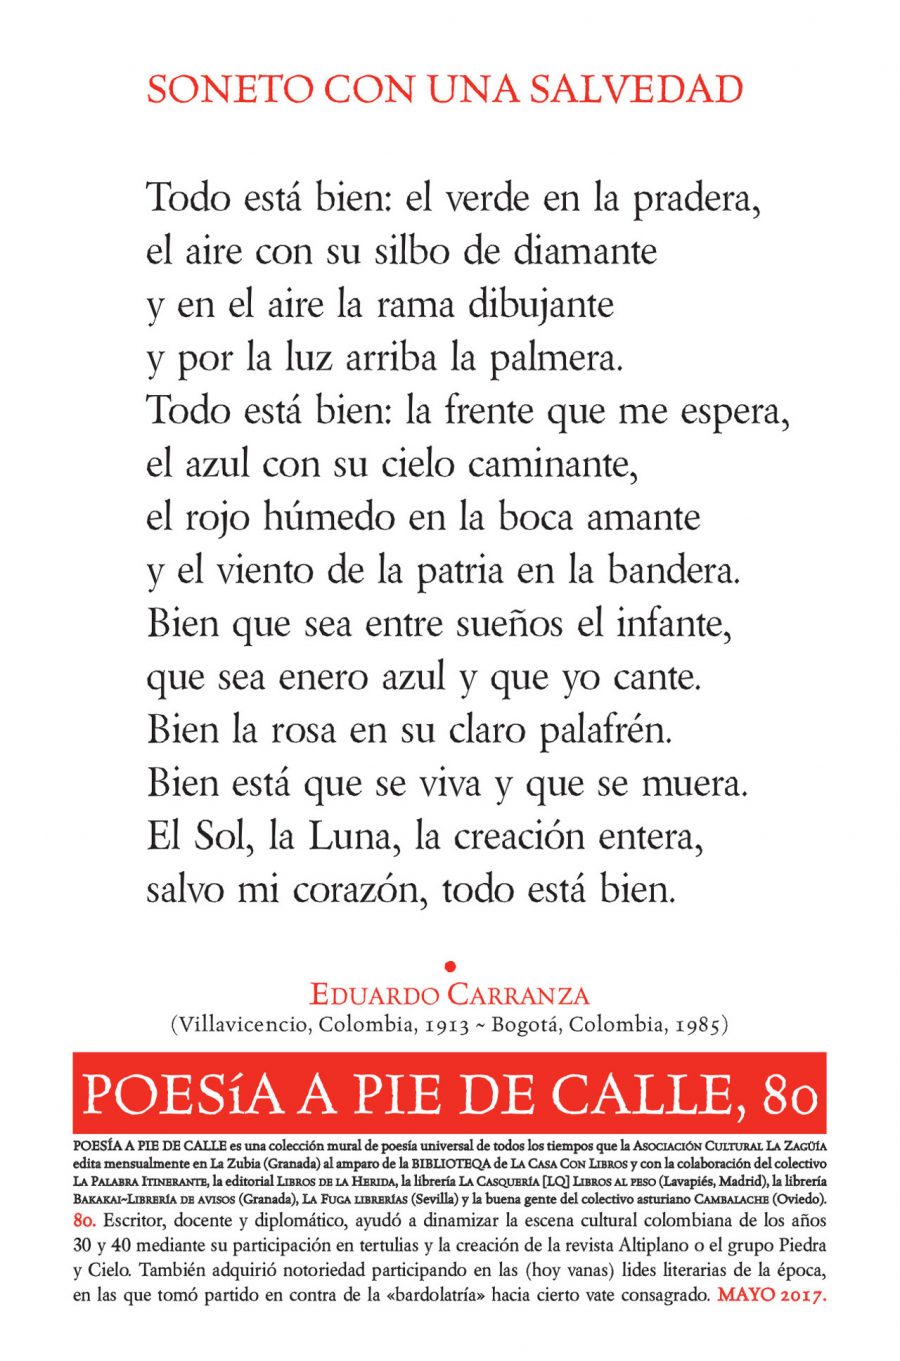 POESÍA A PIE DE CALLE, 80: “SONETO CON UNA SALVEDAD”, DE EDUARDO CARRANZA